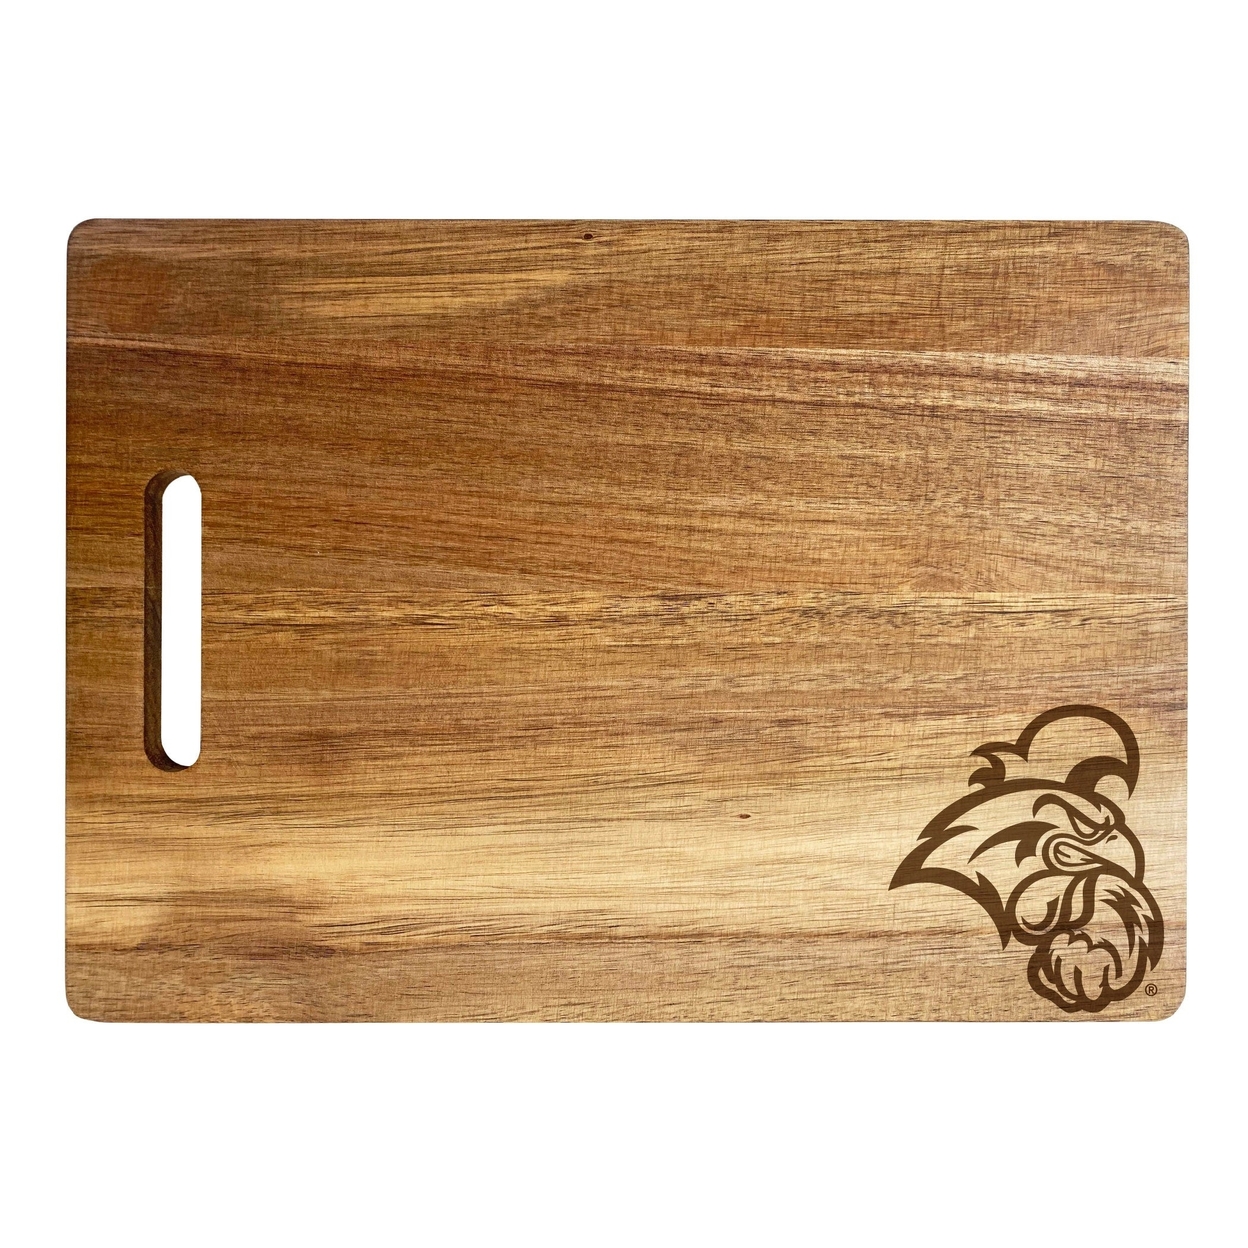 Coastal Carolina University Engraved Wooden Cutting Board 10 X 14 Acacia Wood - Small Engraving